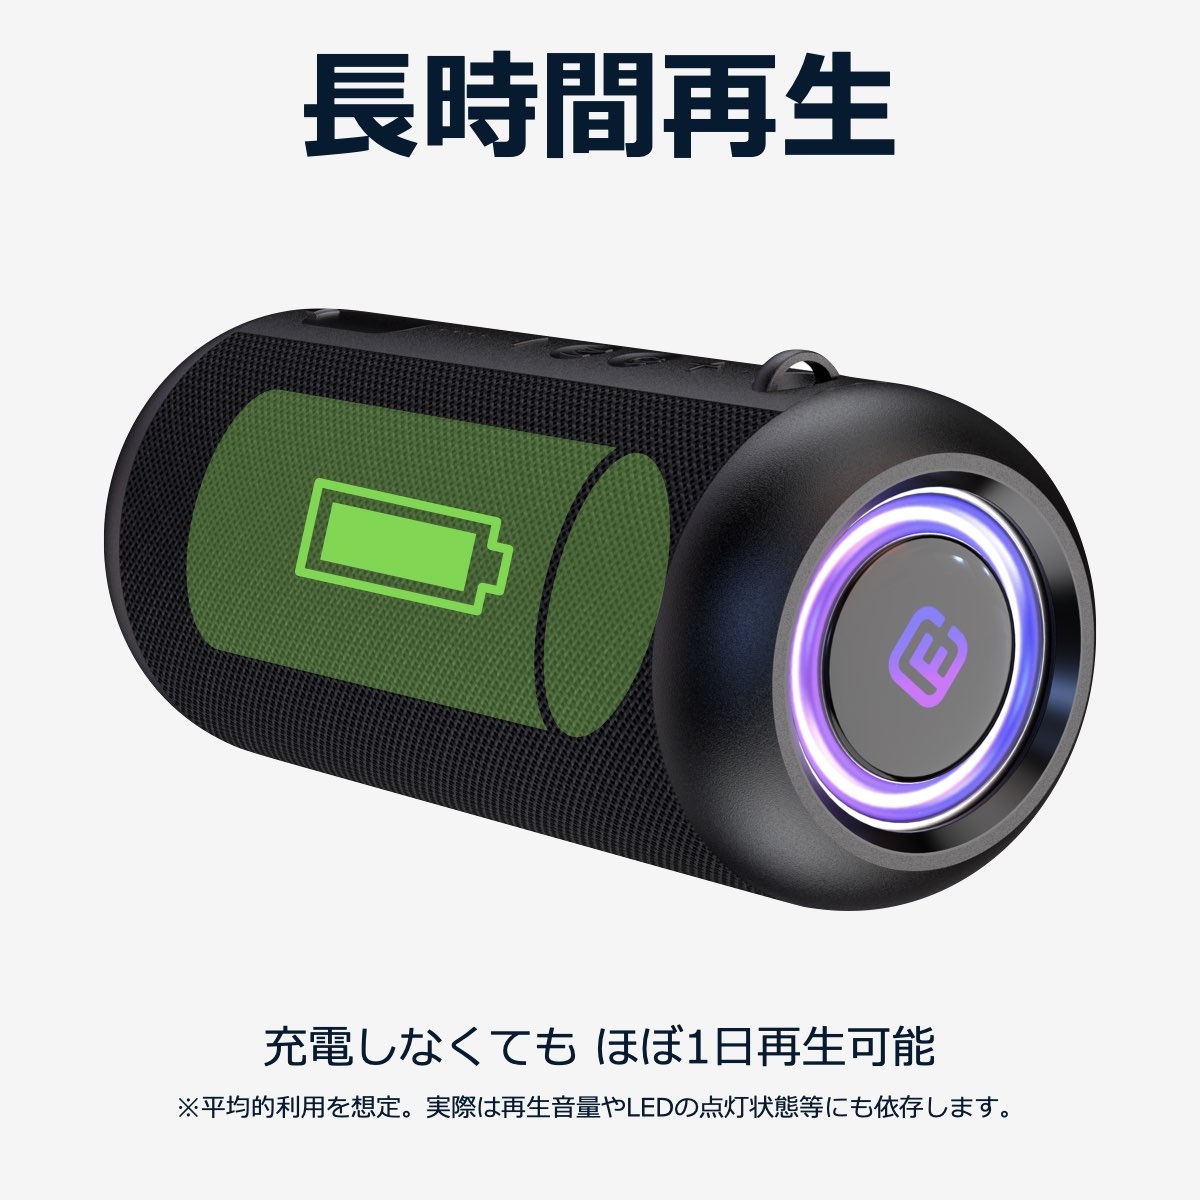 高音質 防水防塵対応 Bluetooth スピーカー | Giftpad egift